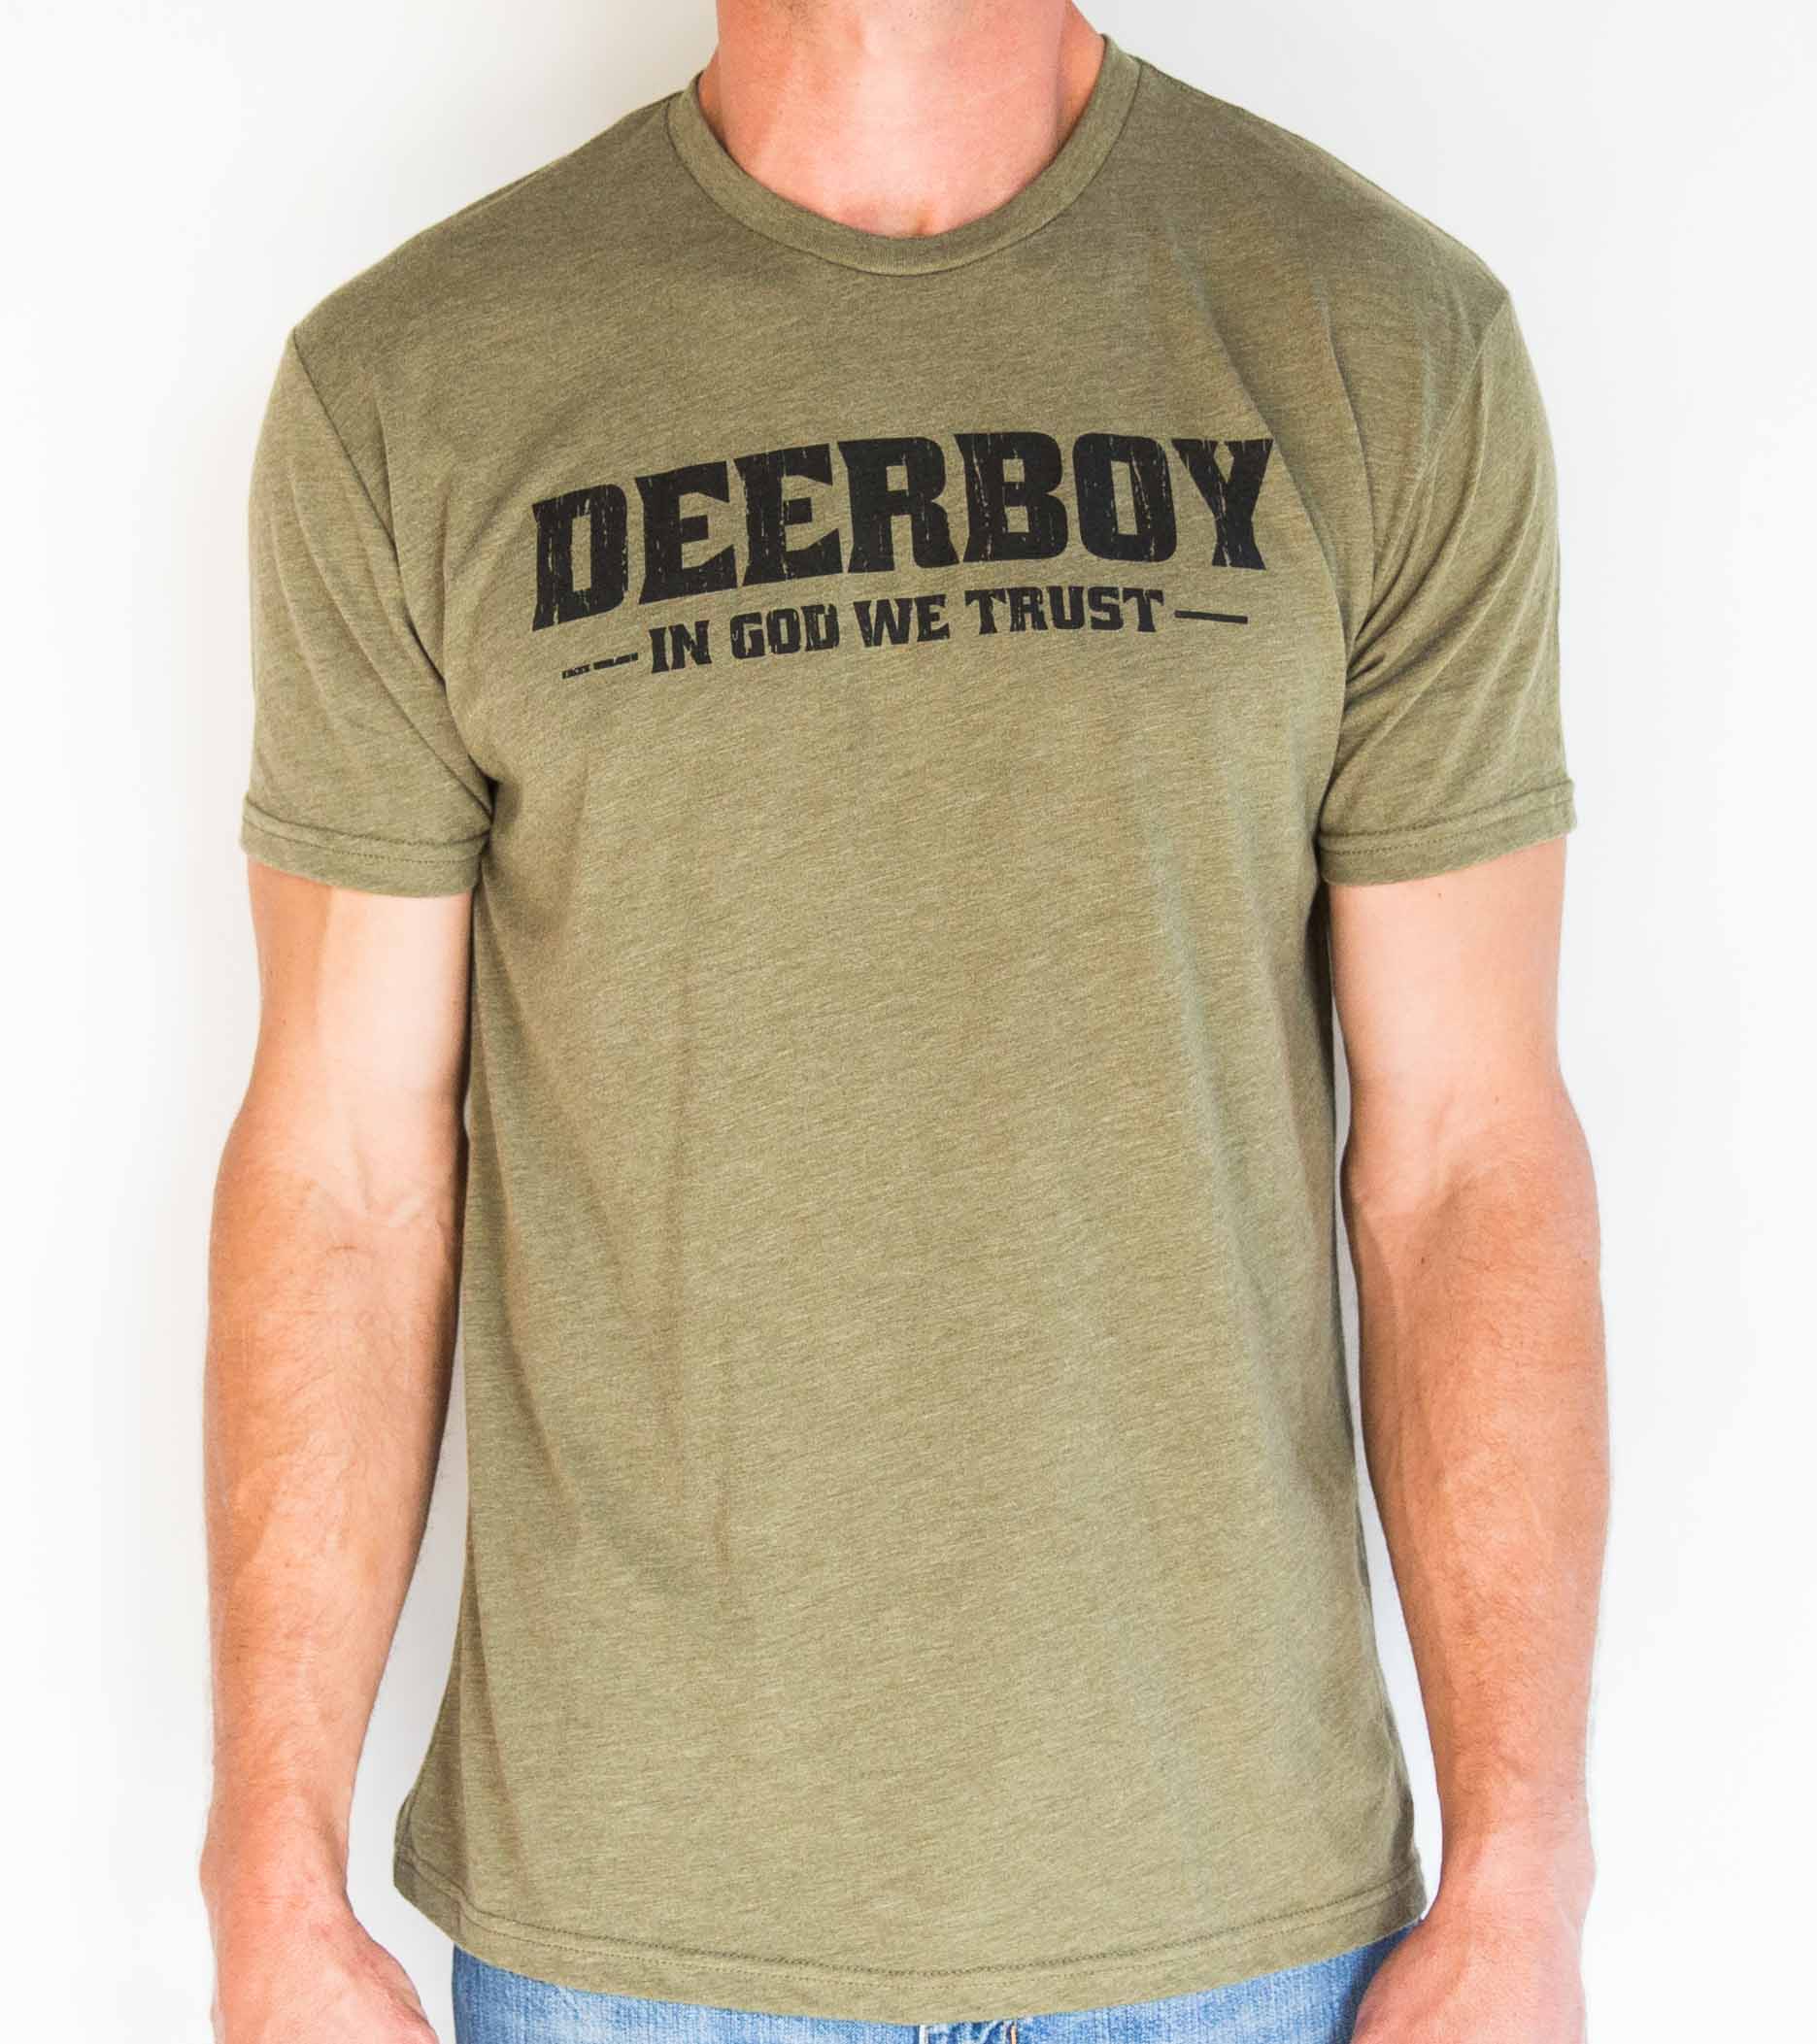 Deerboy In God We Trust Tee In Olive Drab